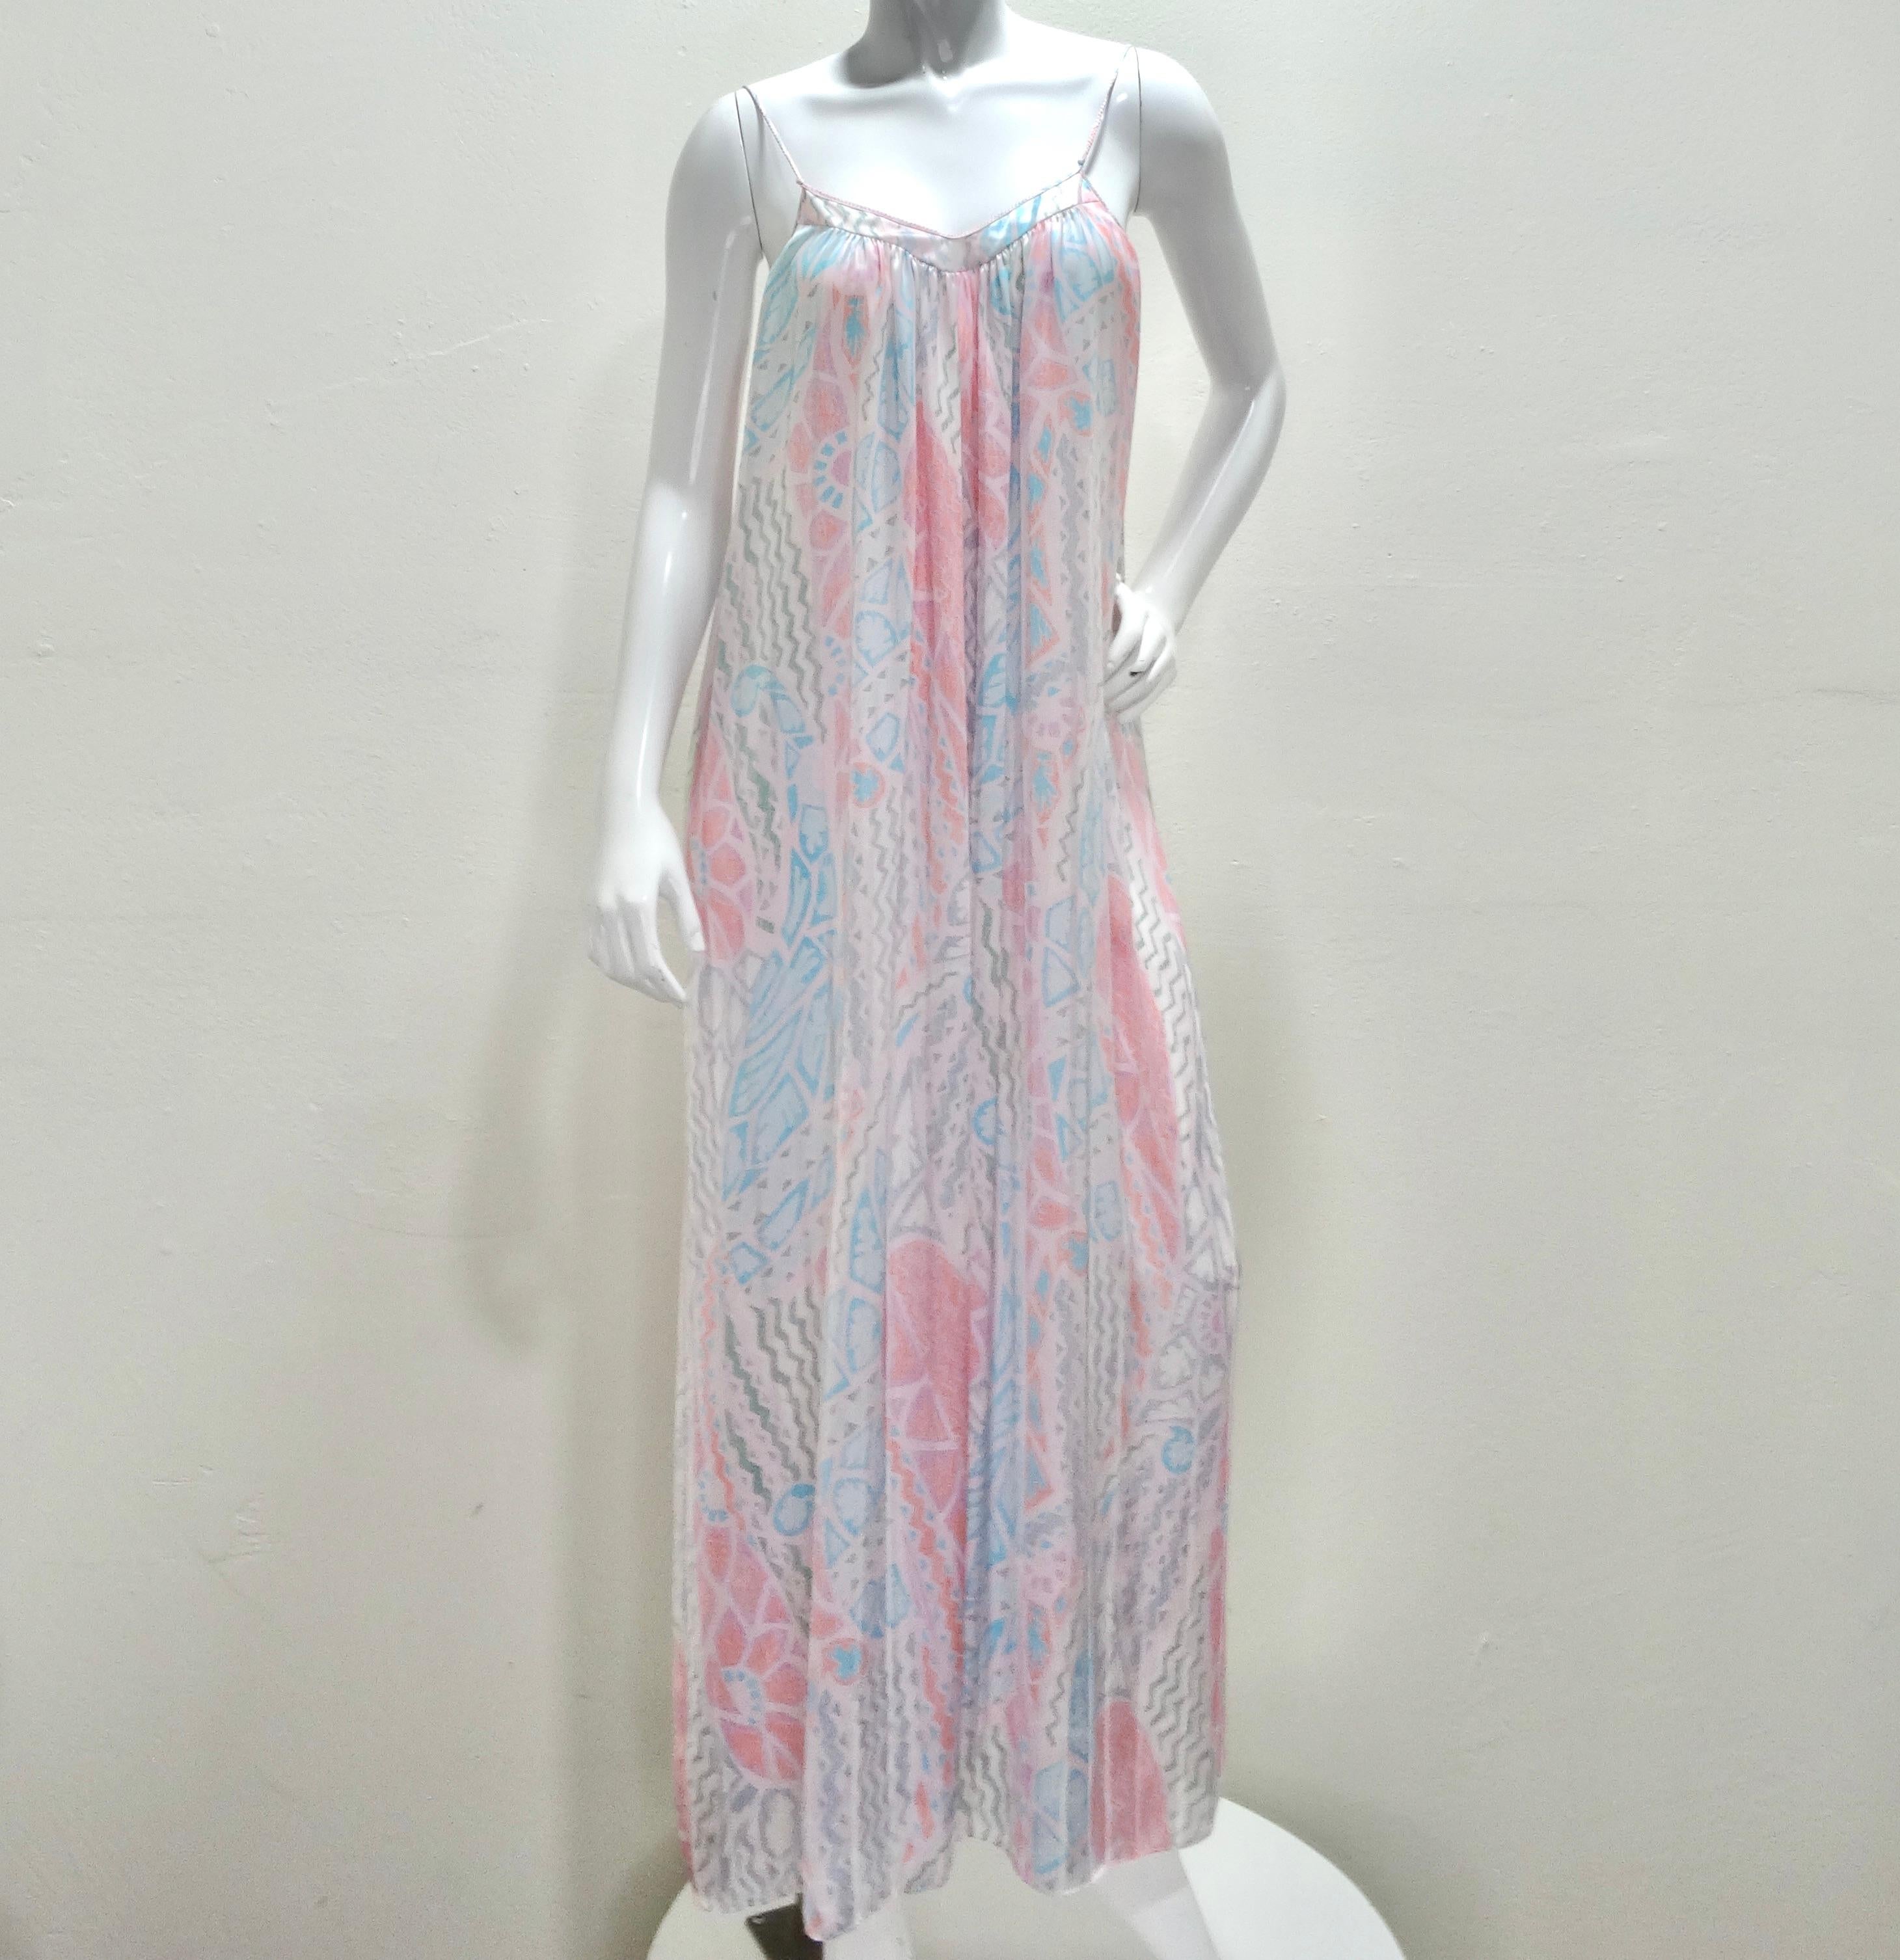 Das Mary McFadden 1980s Printed Slip Dress ist ein umwerfendes Kleidungsstück, das die Essenz zeitloser Schönheit verkörpert. Dieses bodenlange Maxikleid, entworfen von der kultigen Mary McFadden, ist ein Kunstwerk. Das aus luxuriösem rosa, weißem